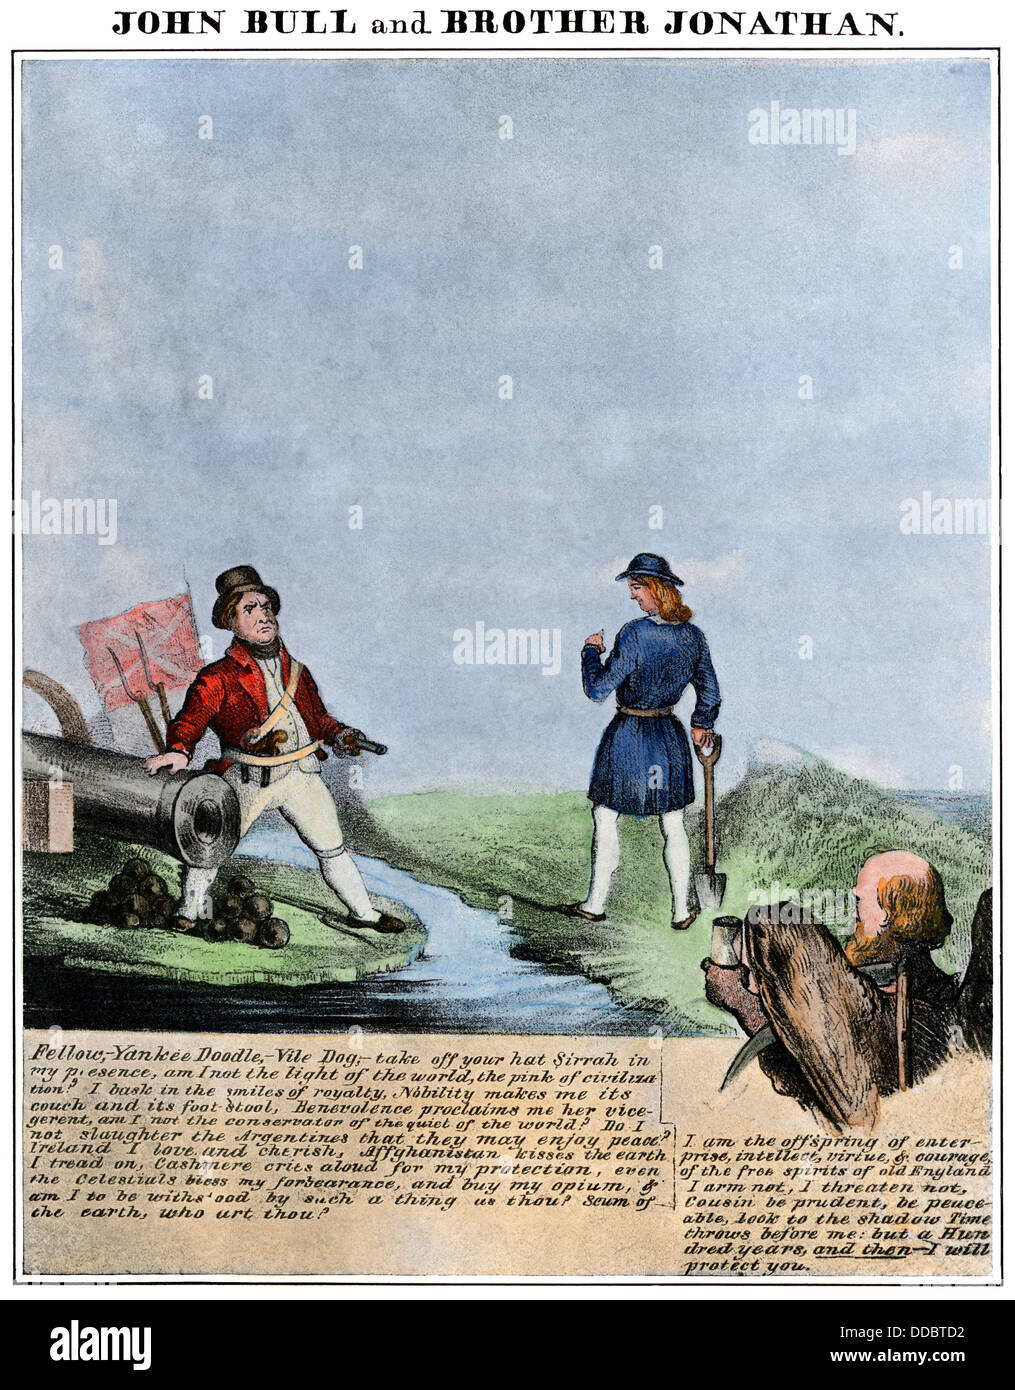 John Bull und Bruder Jonathan, ein 1840 Cartoon über britisch-amerikanischen Beziehungen. Handcolorierte halftone Reproduktion von einem Cartoon Stockfoto